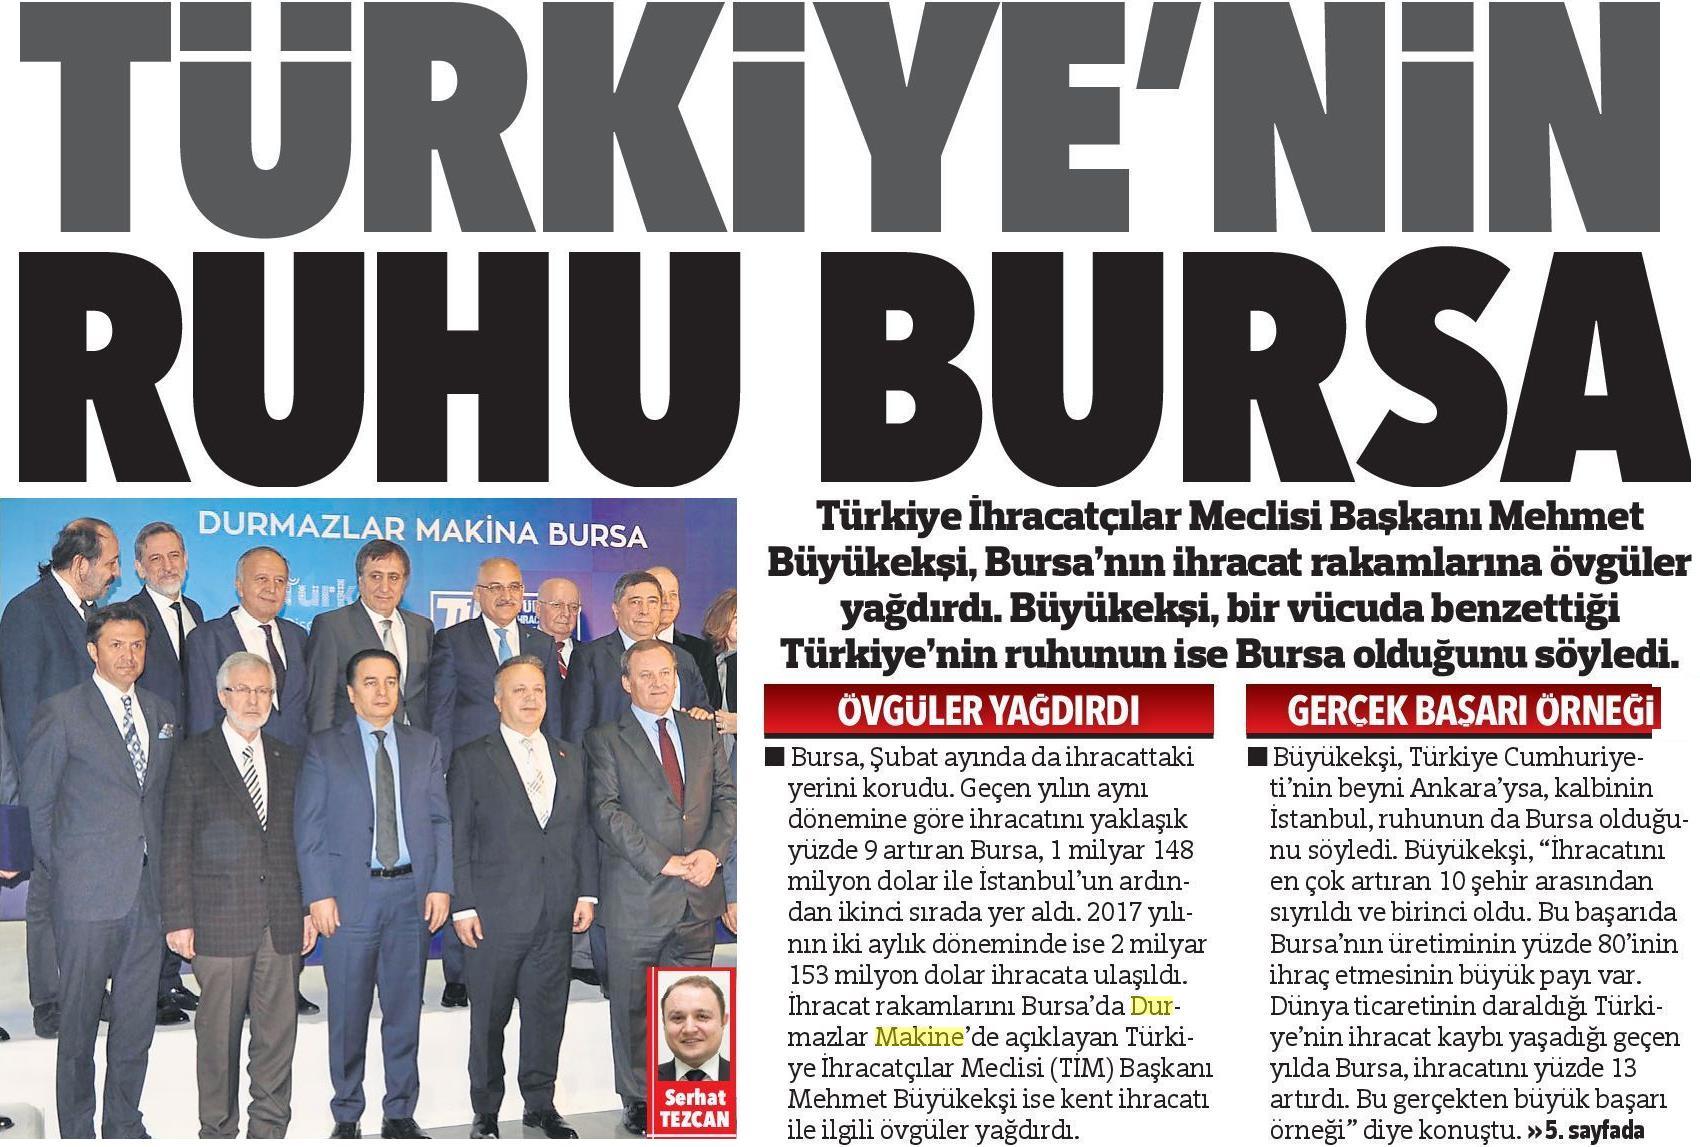 Bursa, das Herz der Türkei